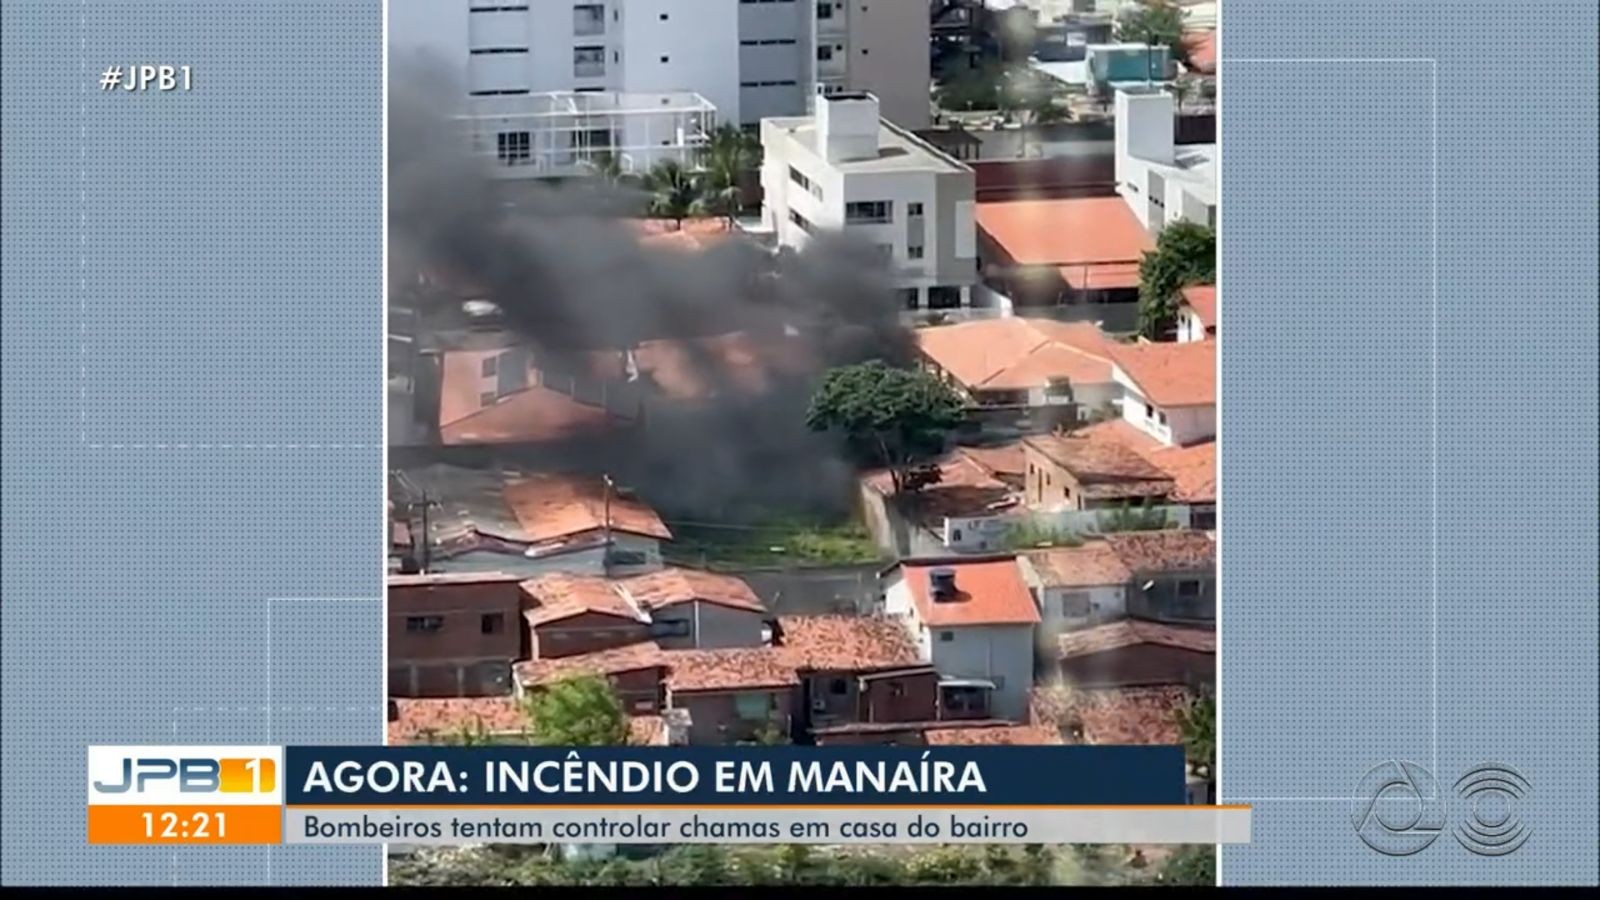 Casa usada como depósito de materiais eletrônicos é atingida por incêndio em João Pessoa